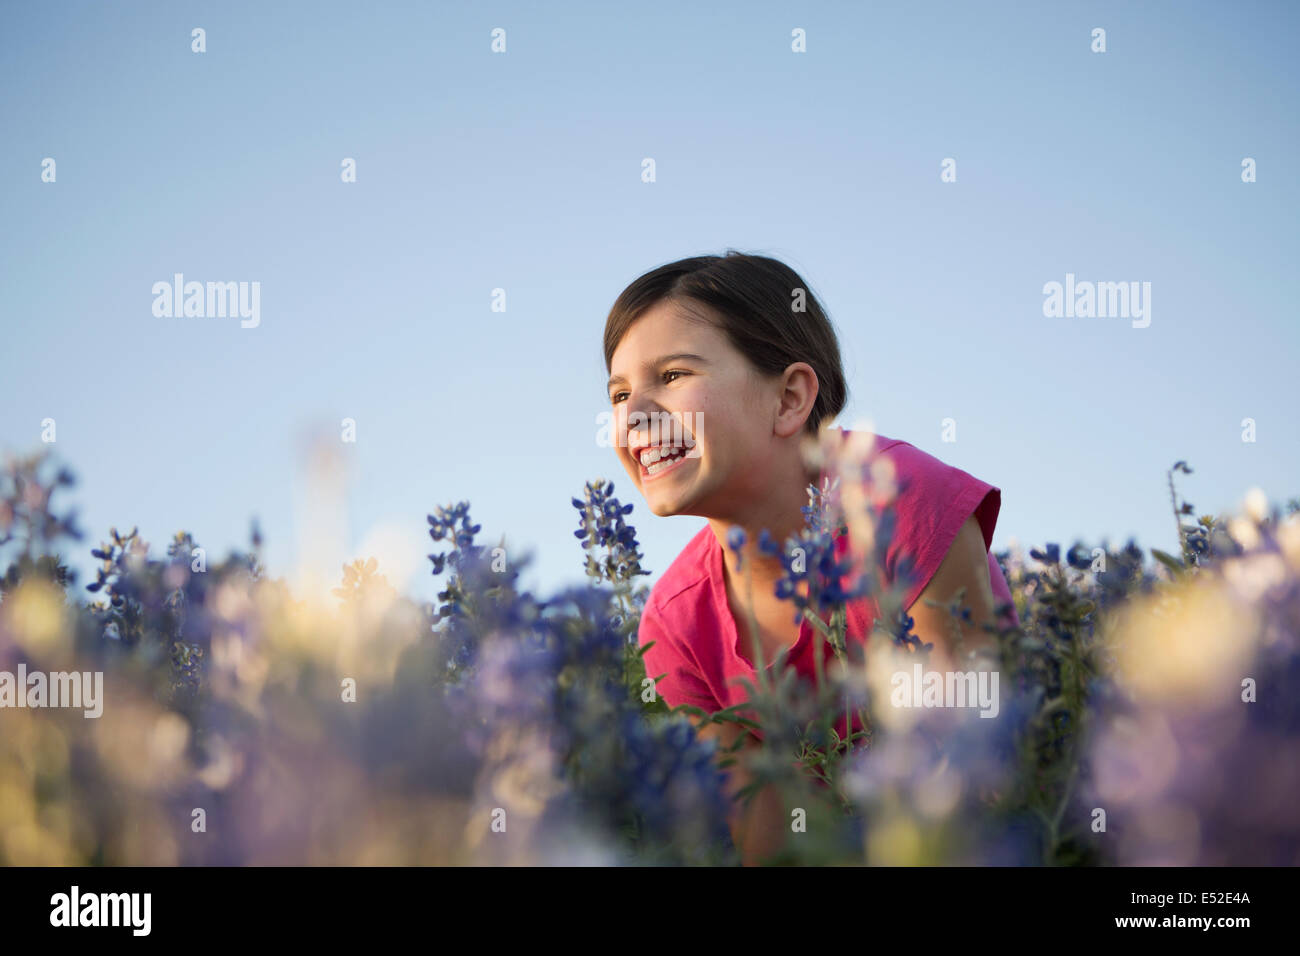 Une jeune fille assise dans un champ de hautes herbes et fleurs sauvages bleues. Banque D'Images